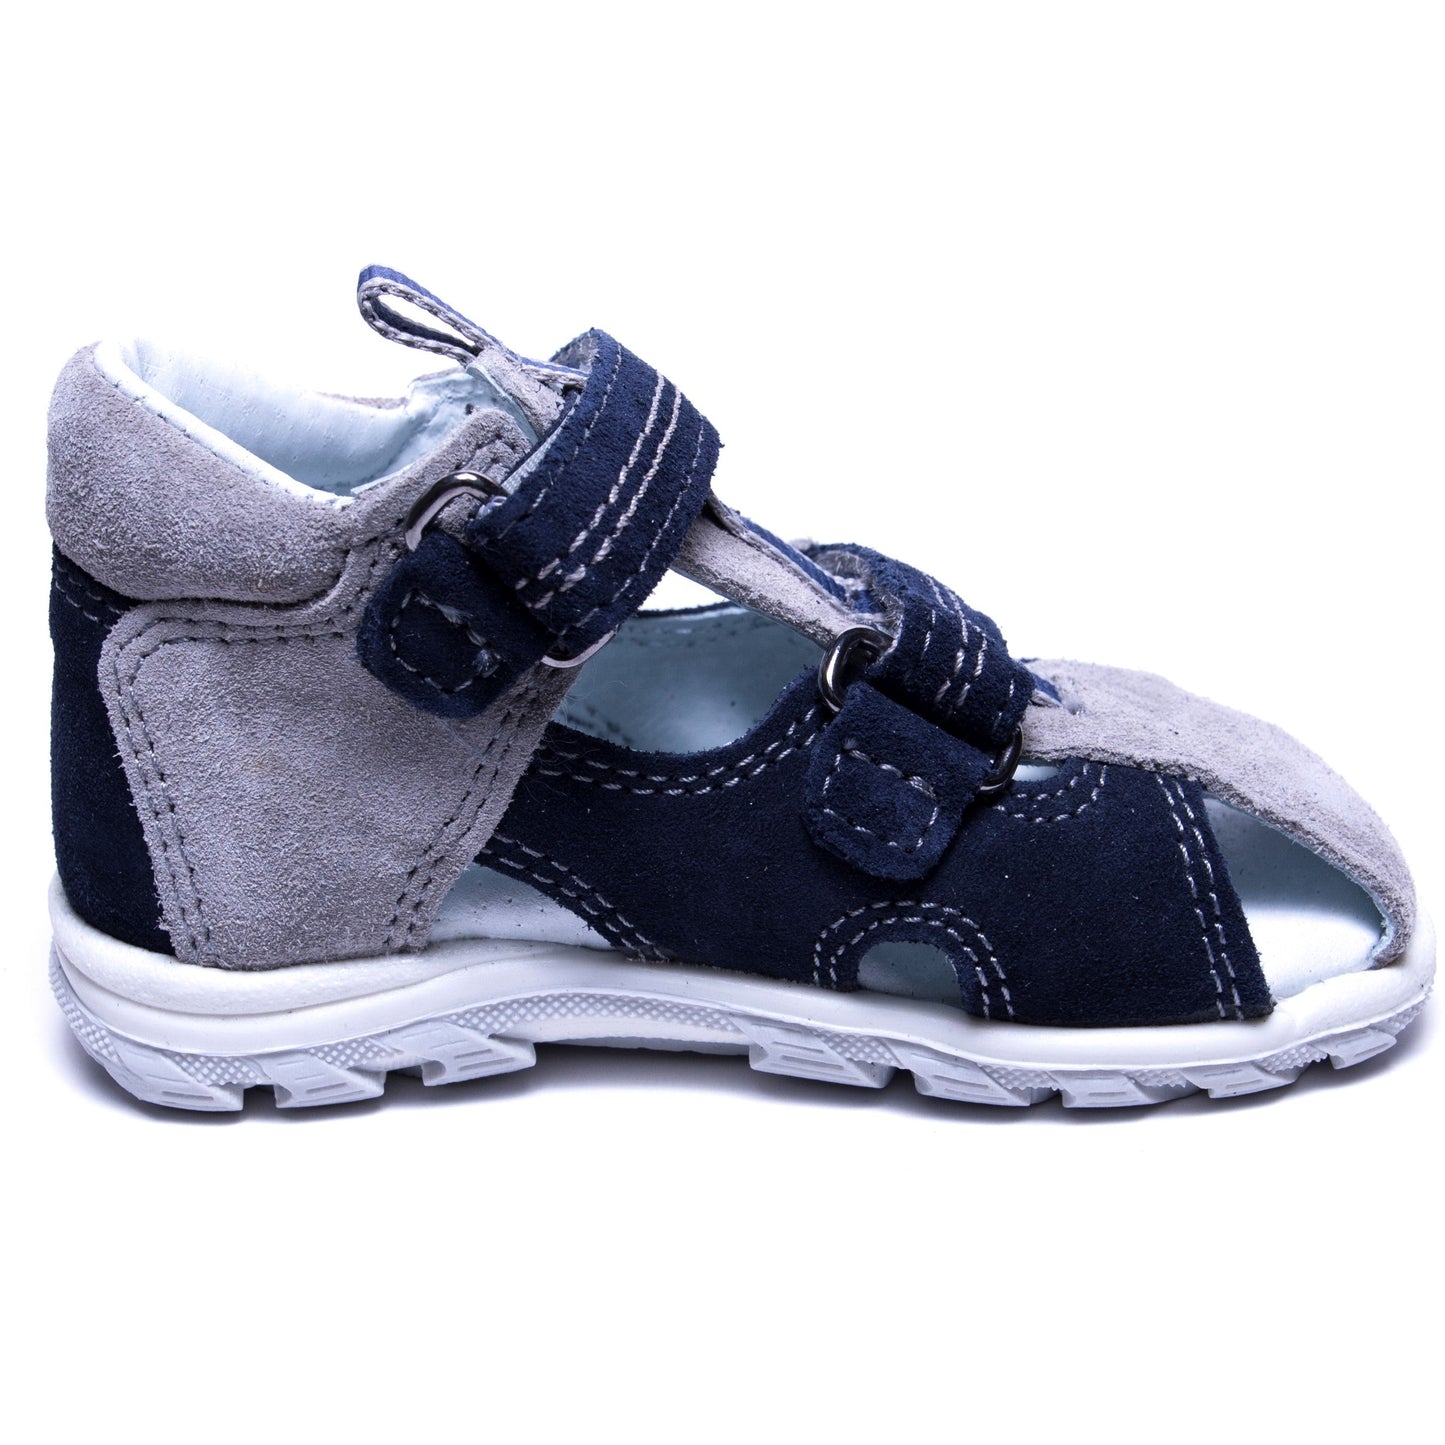 orthopedic toddler boy sandals: T102: color blue grey